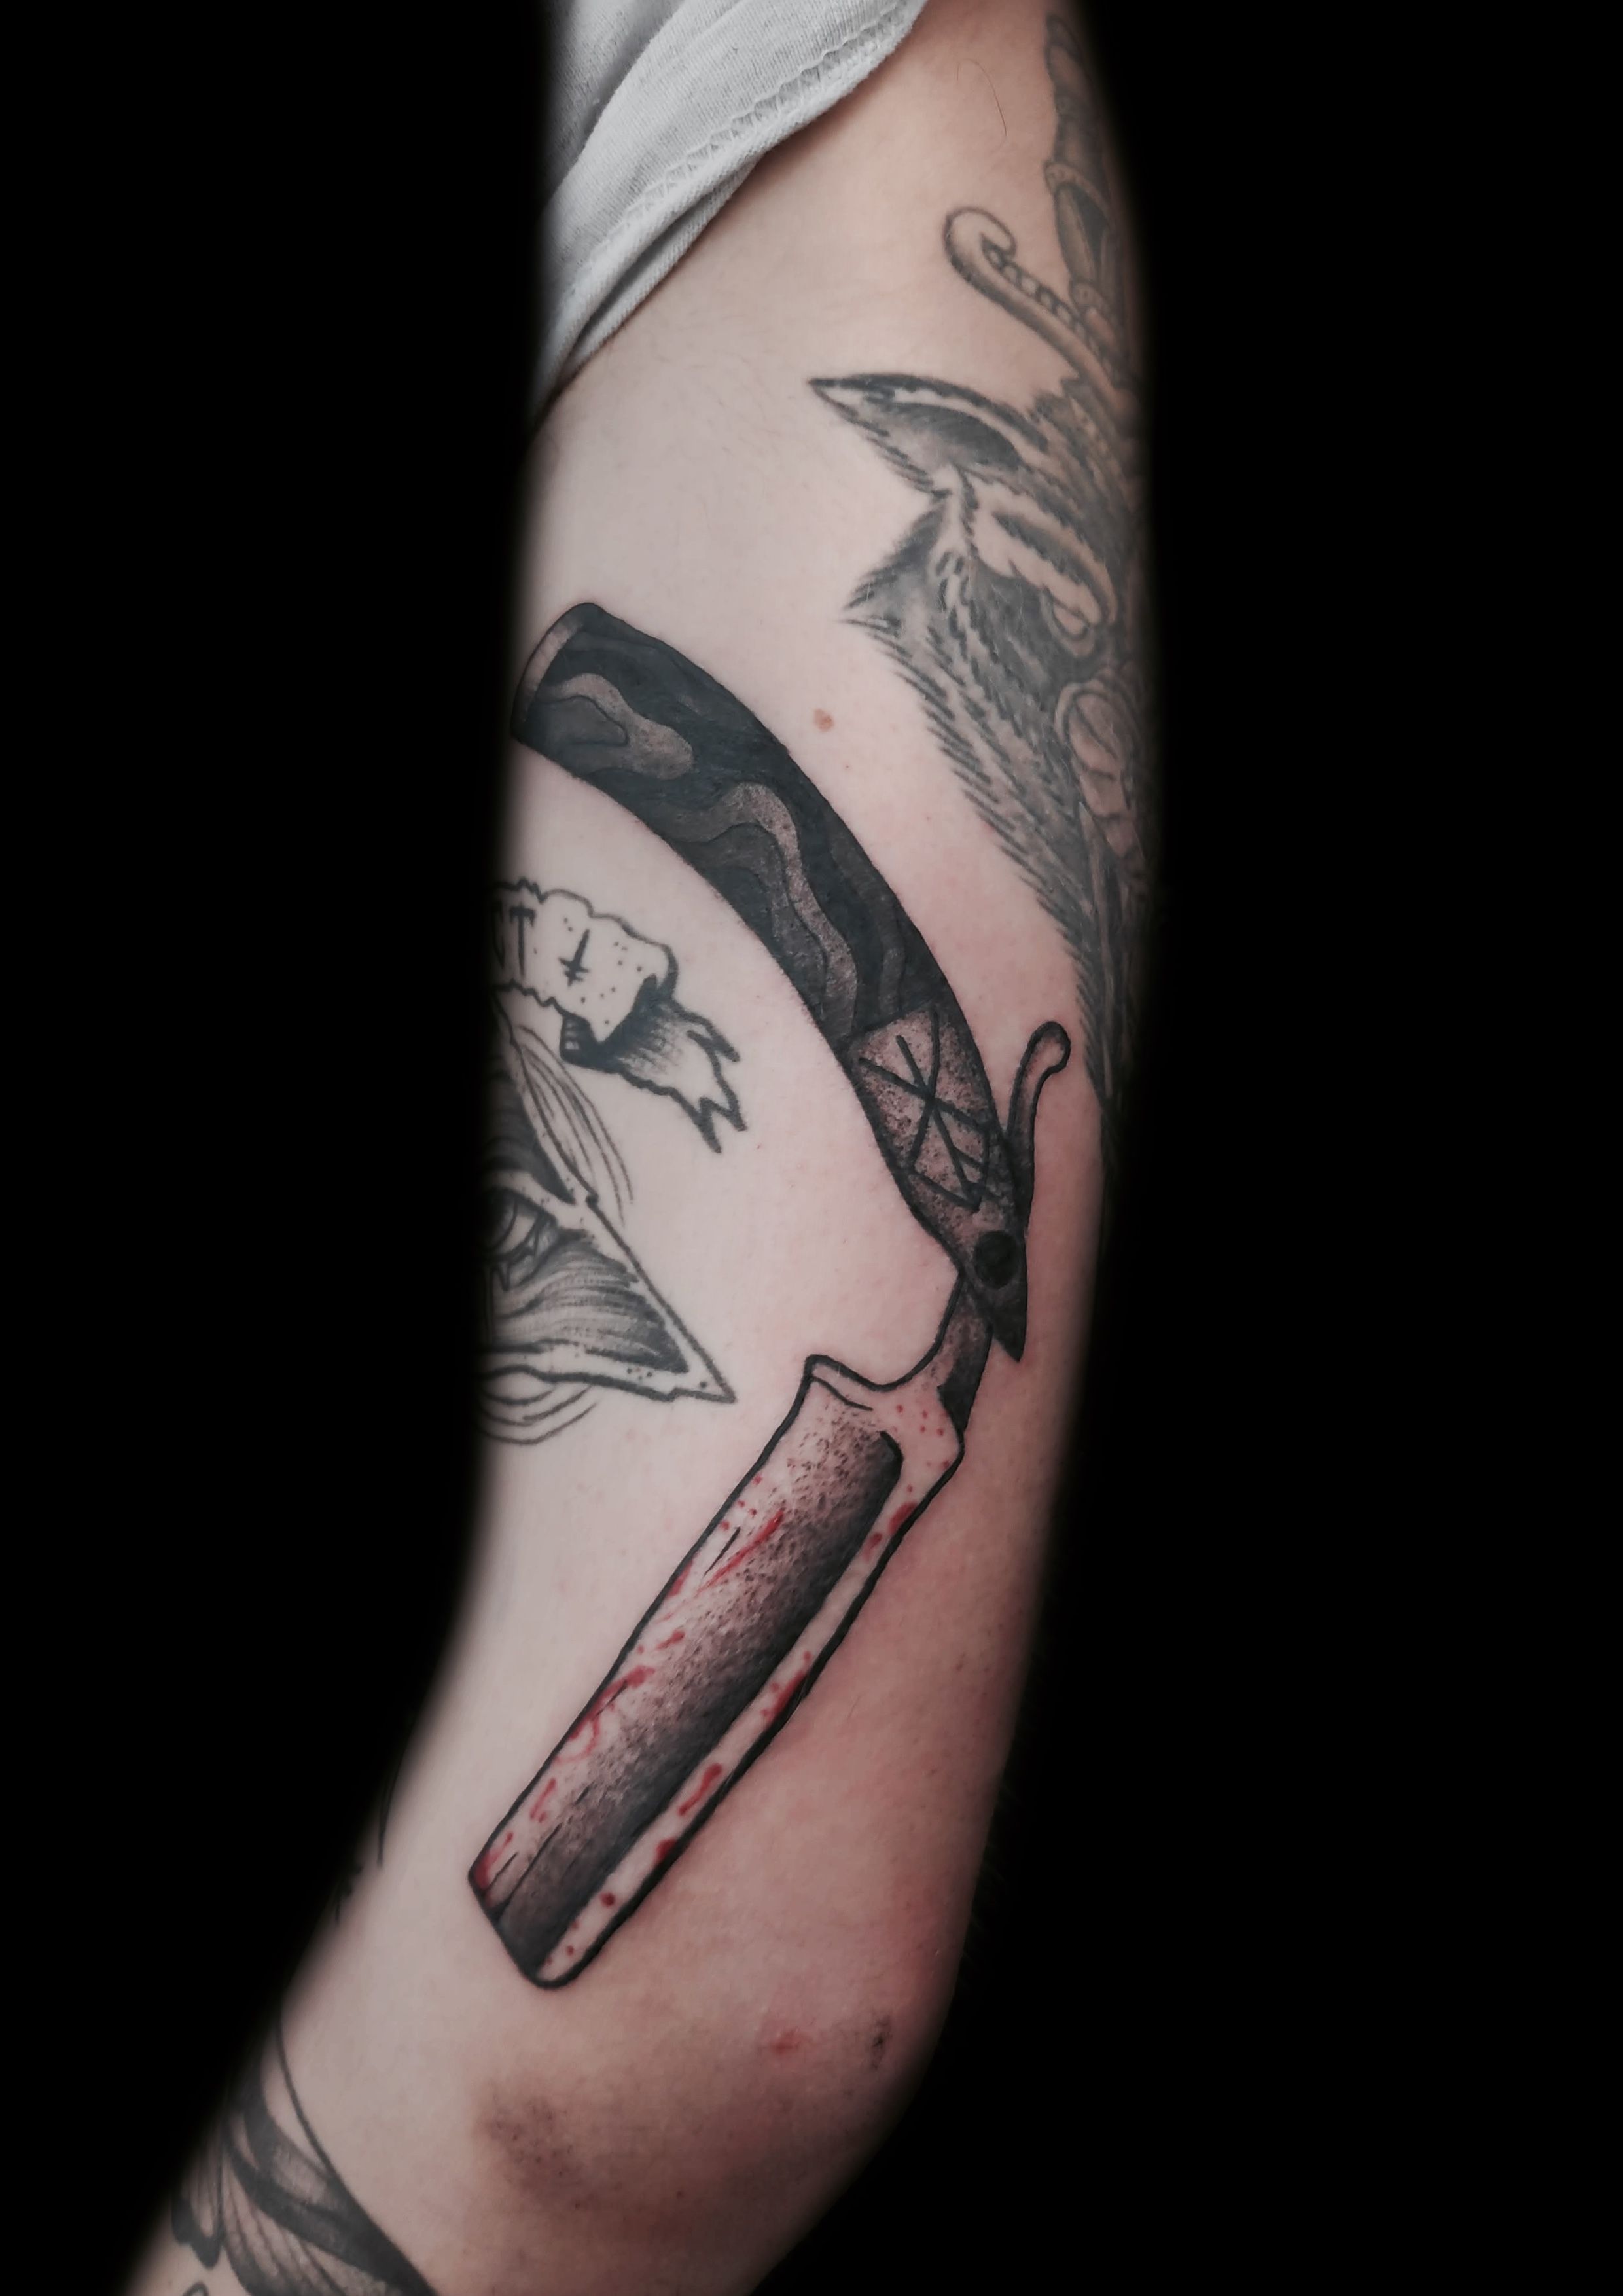 Barber's tattoo by tattooist Spence @zz tattoo - Tattoogrid.net